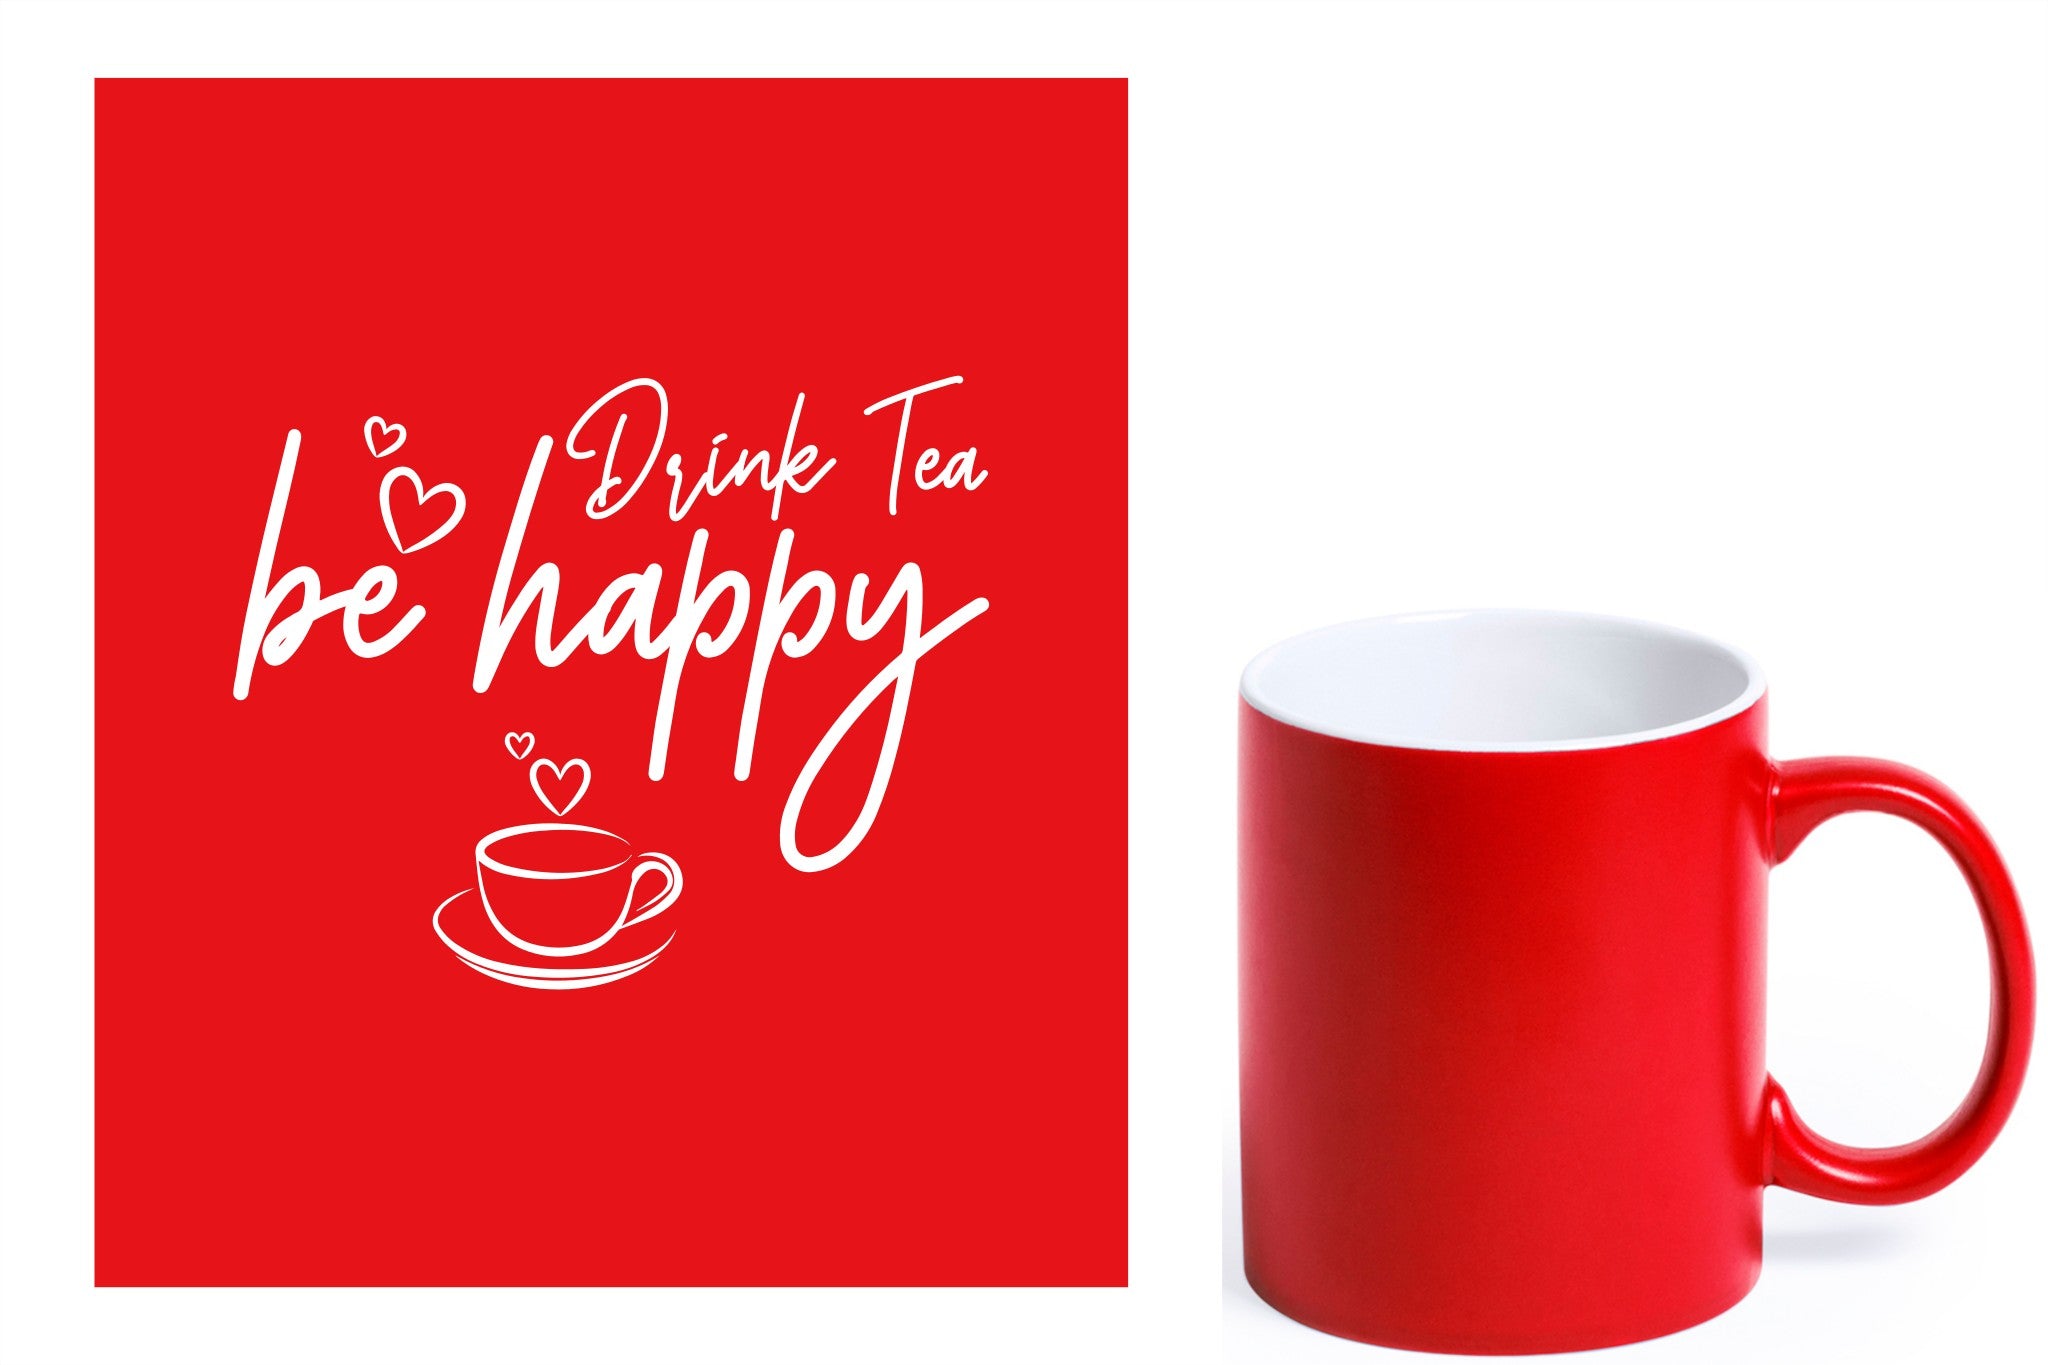 rode keramische mok met witte gravure  'Be happy drink tea'.